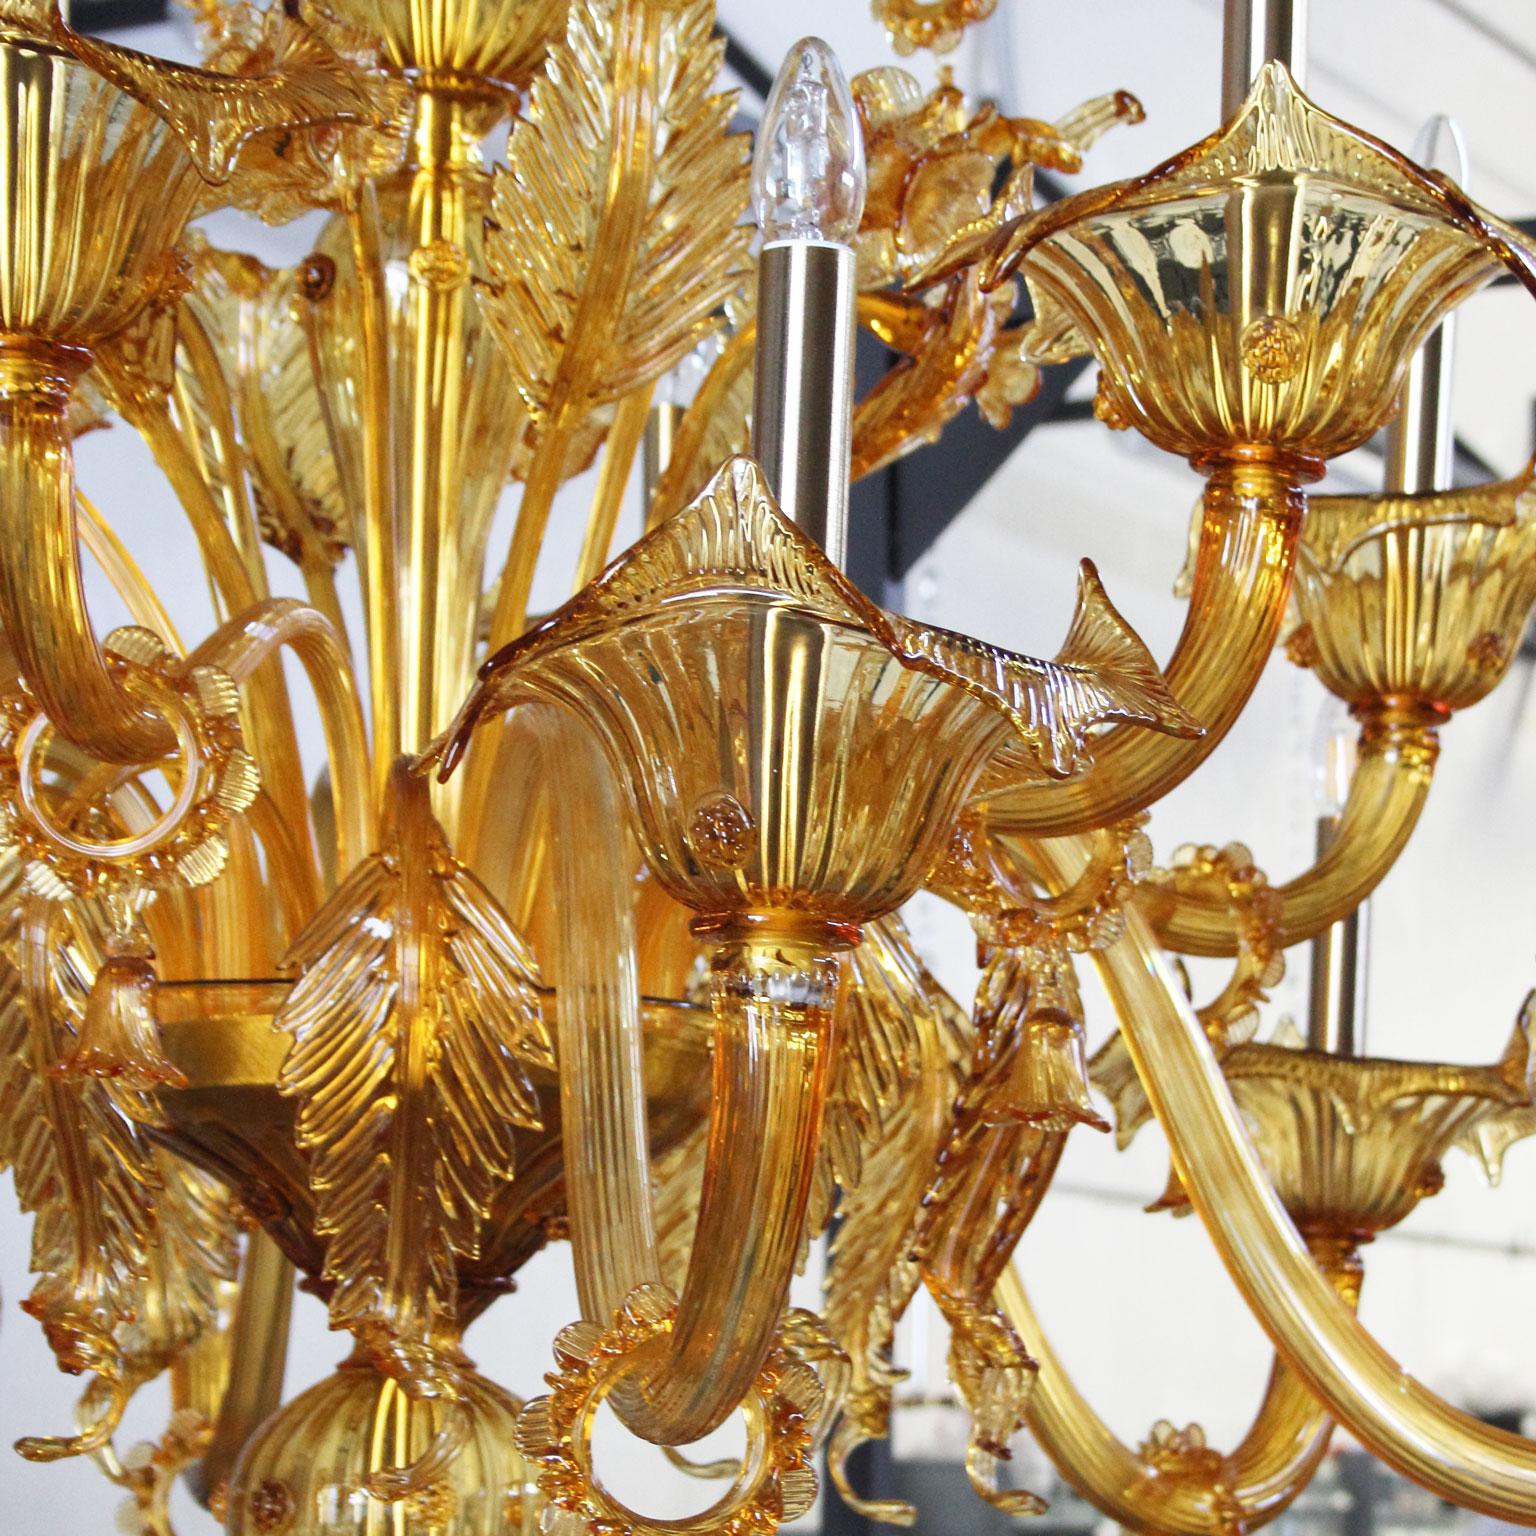 Bovary Kronleuchter, 42 Leuchten, dreistöckig, Bernsteinfarbenes Muranoglas von Multiforme

Bovary: eine Kollektion mundgeblasener Glaslüster und -lampen, die sich an den klassischen venezianischen Kronleuchtern mit Blumenmuster orientiert.
Die